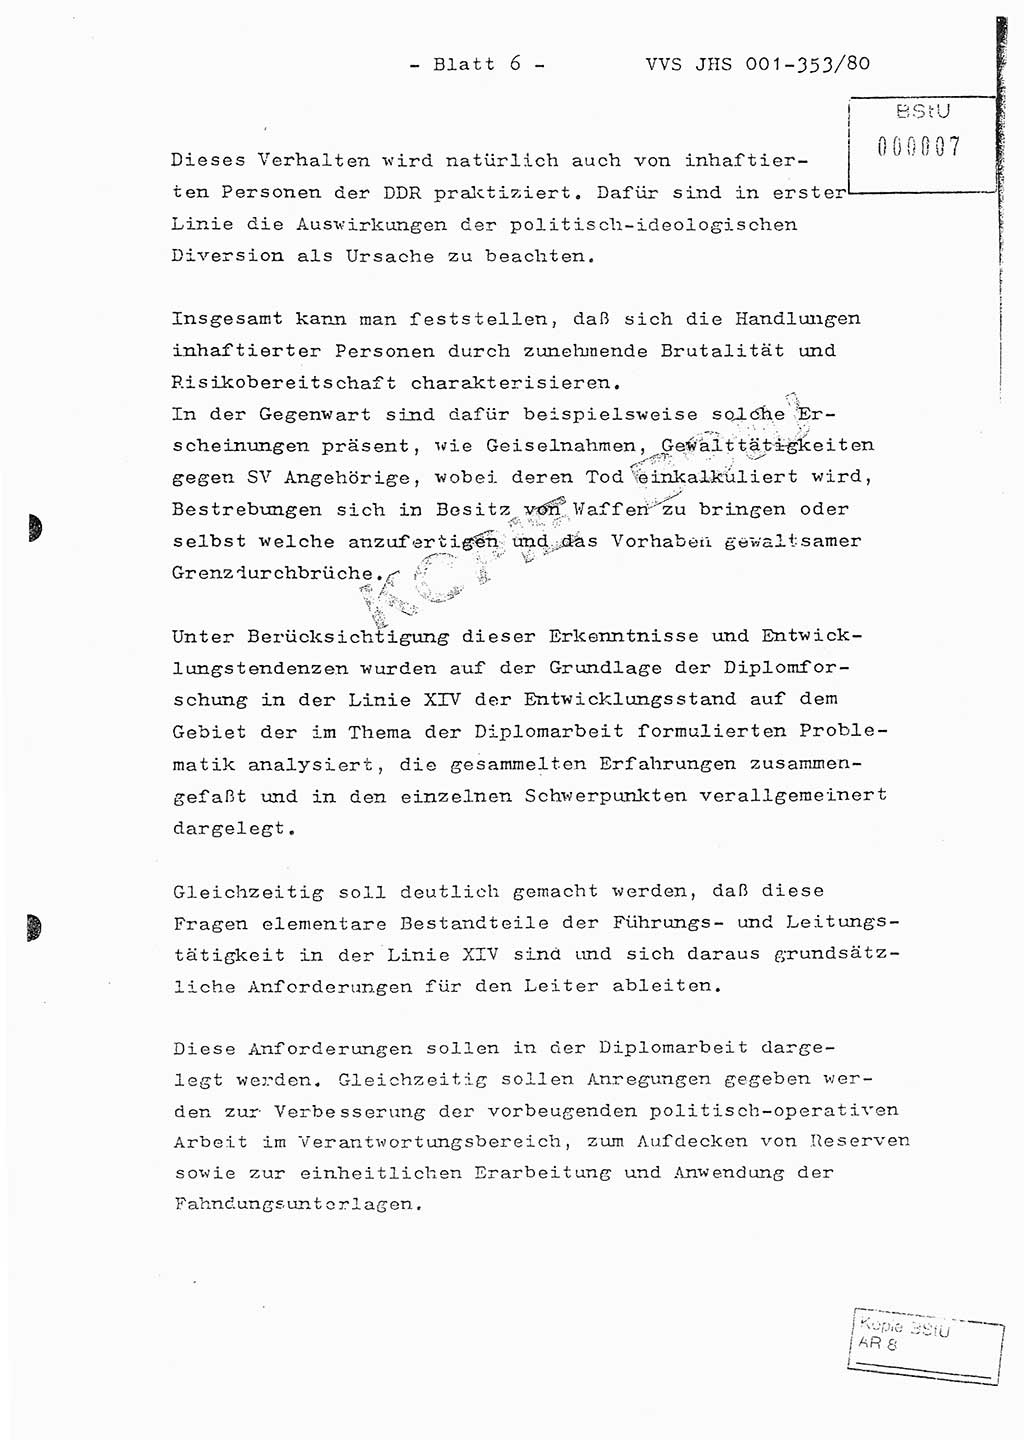 Diplomarbeit Hauptmann Joachim Klaumünzner (Abt. ⅩⅣ), Ministerium für Staatssicherheit (MfS) [Deutsche Demokratische Republik (DDR)], Juristische Hochschule (JHS), Vertrauliche Verschlußsache (VVS) o001-353/80, Potsdam 1980, Blatt 6 (Dipl.-Arb. MfS DDR JHS VVS o001-353/80 1980, Bl. 6)